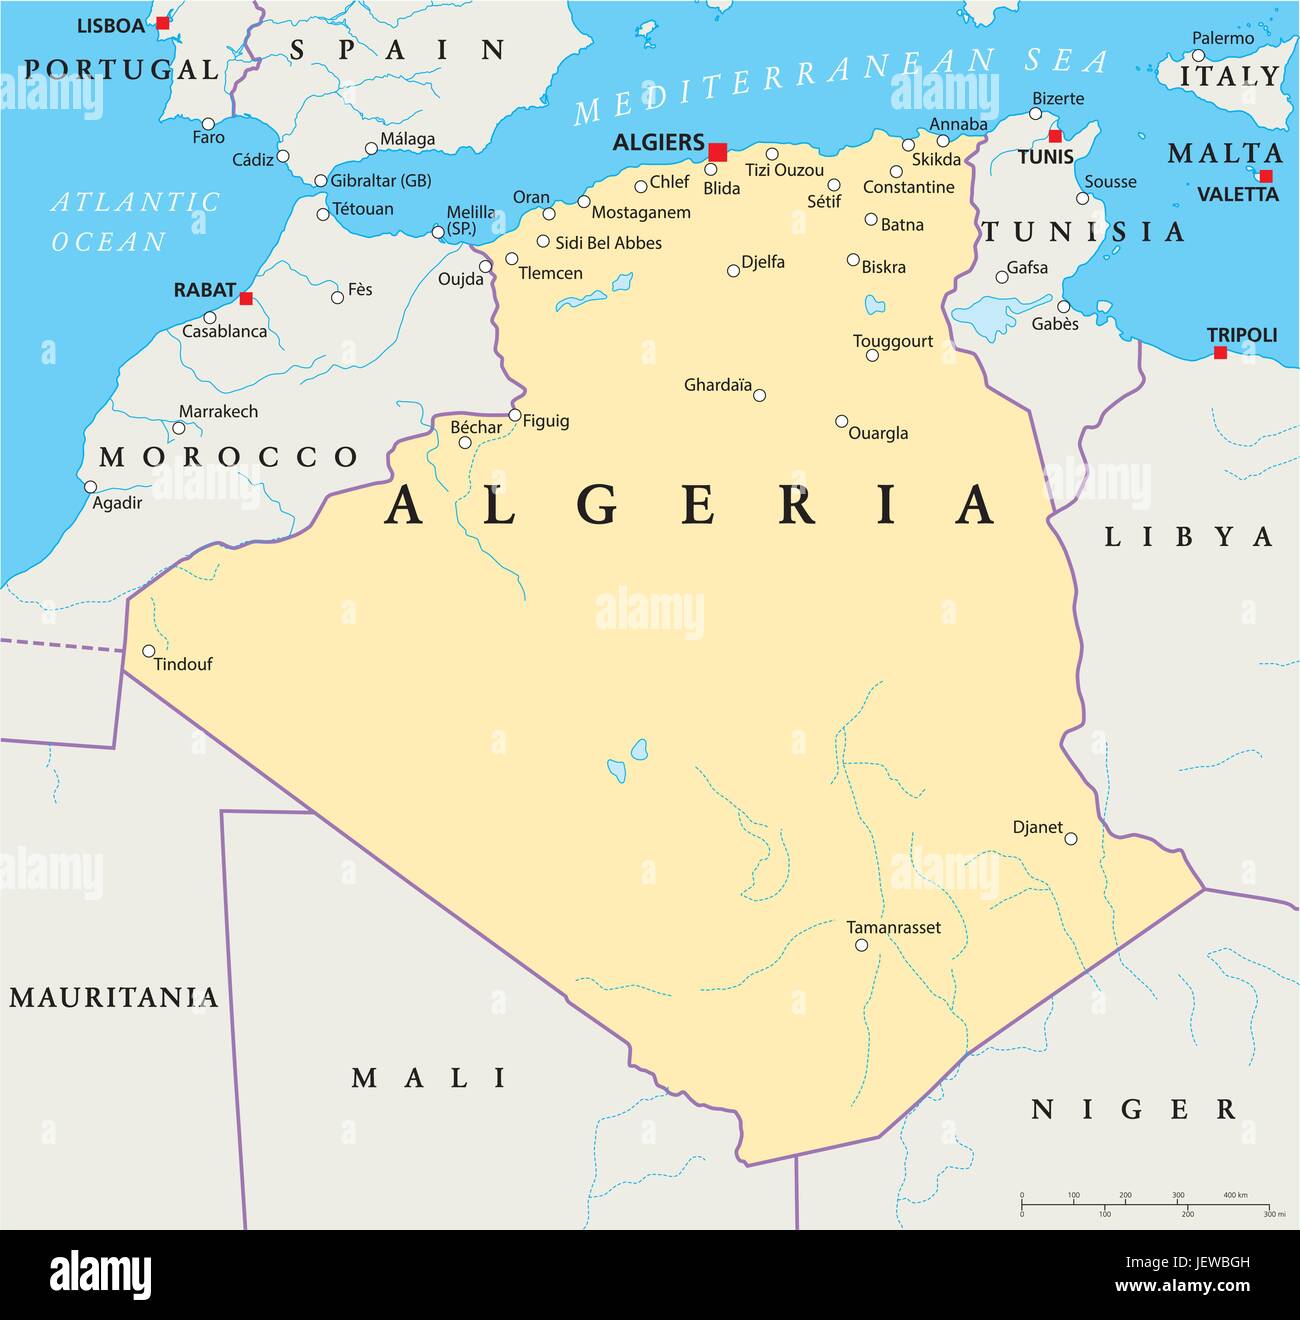 País, Estado, Argelia, geografía, cartografía, mapas, atlas, mapa del mundo, Ilustración del Vector